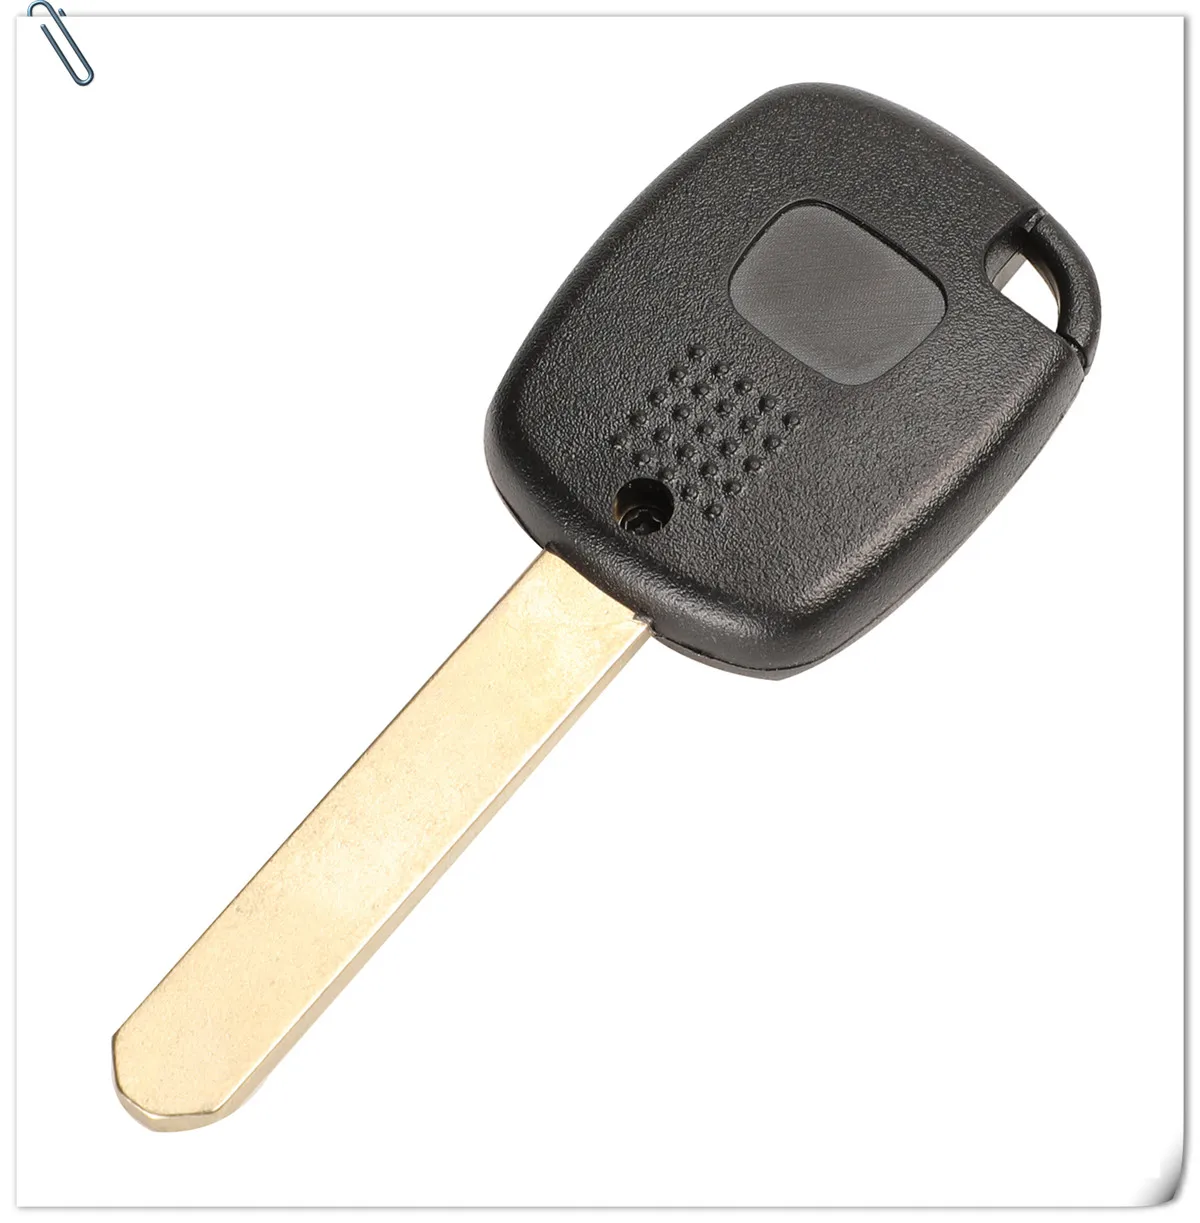 Jingyuqin 1/2 кнопки дистанционного ключа чехол для Honda CR-V Odyssey Fit, City c-ivic accord с кнопкой Pad